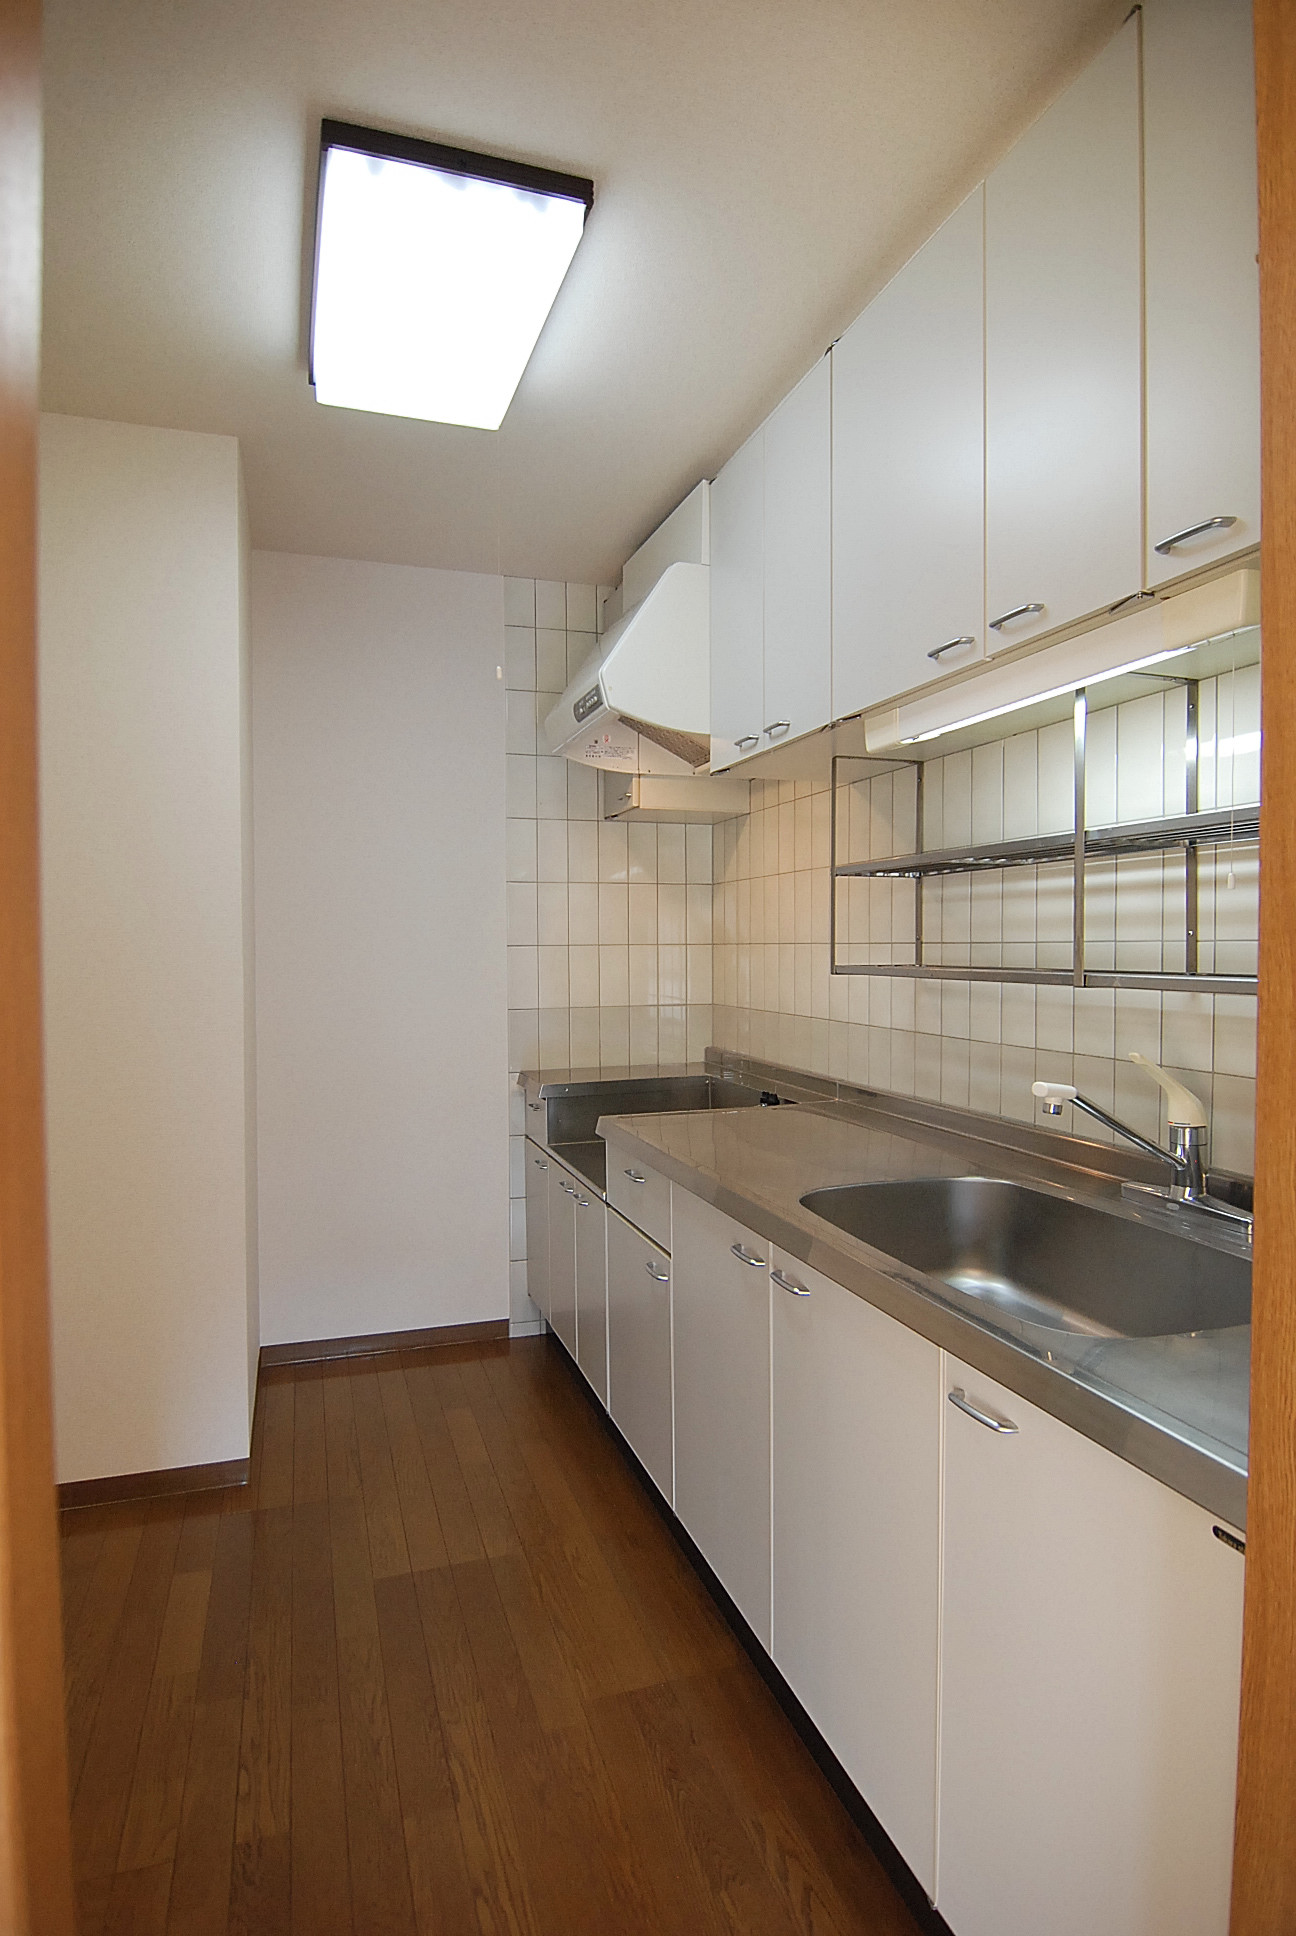 Kitchen. 3.4 Pledge kitchen space refrigerator ・ Cupboard is also possible arrangement. 